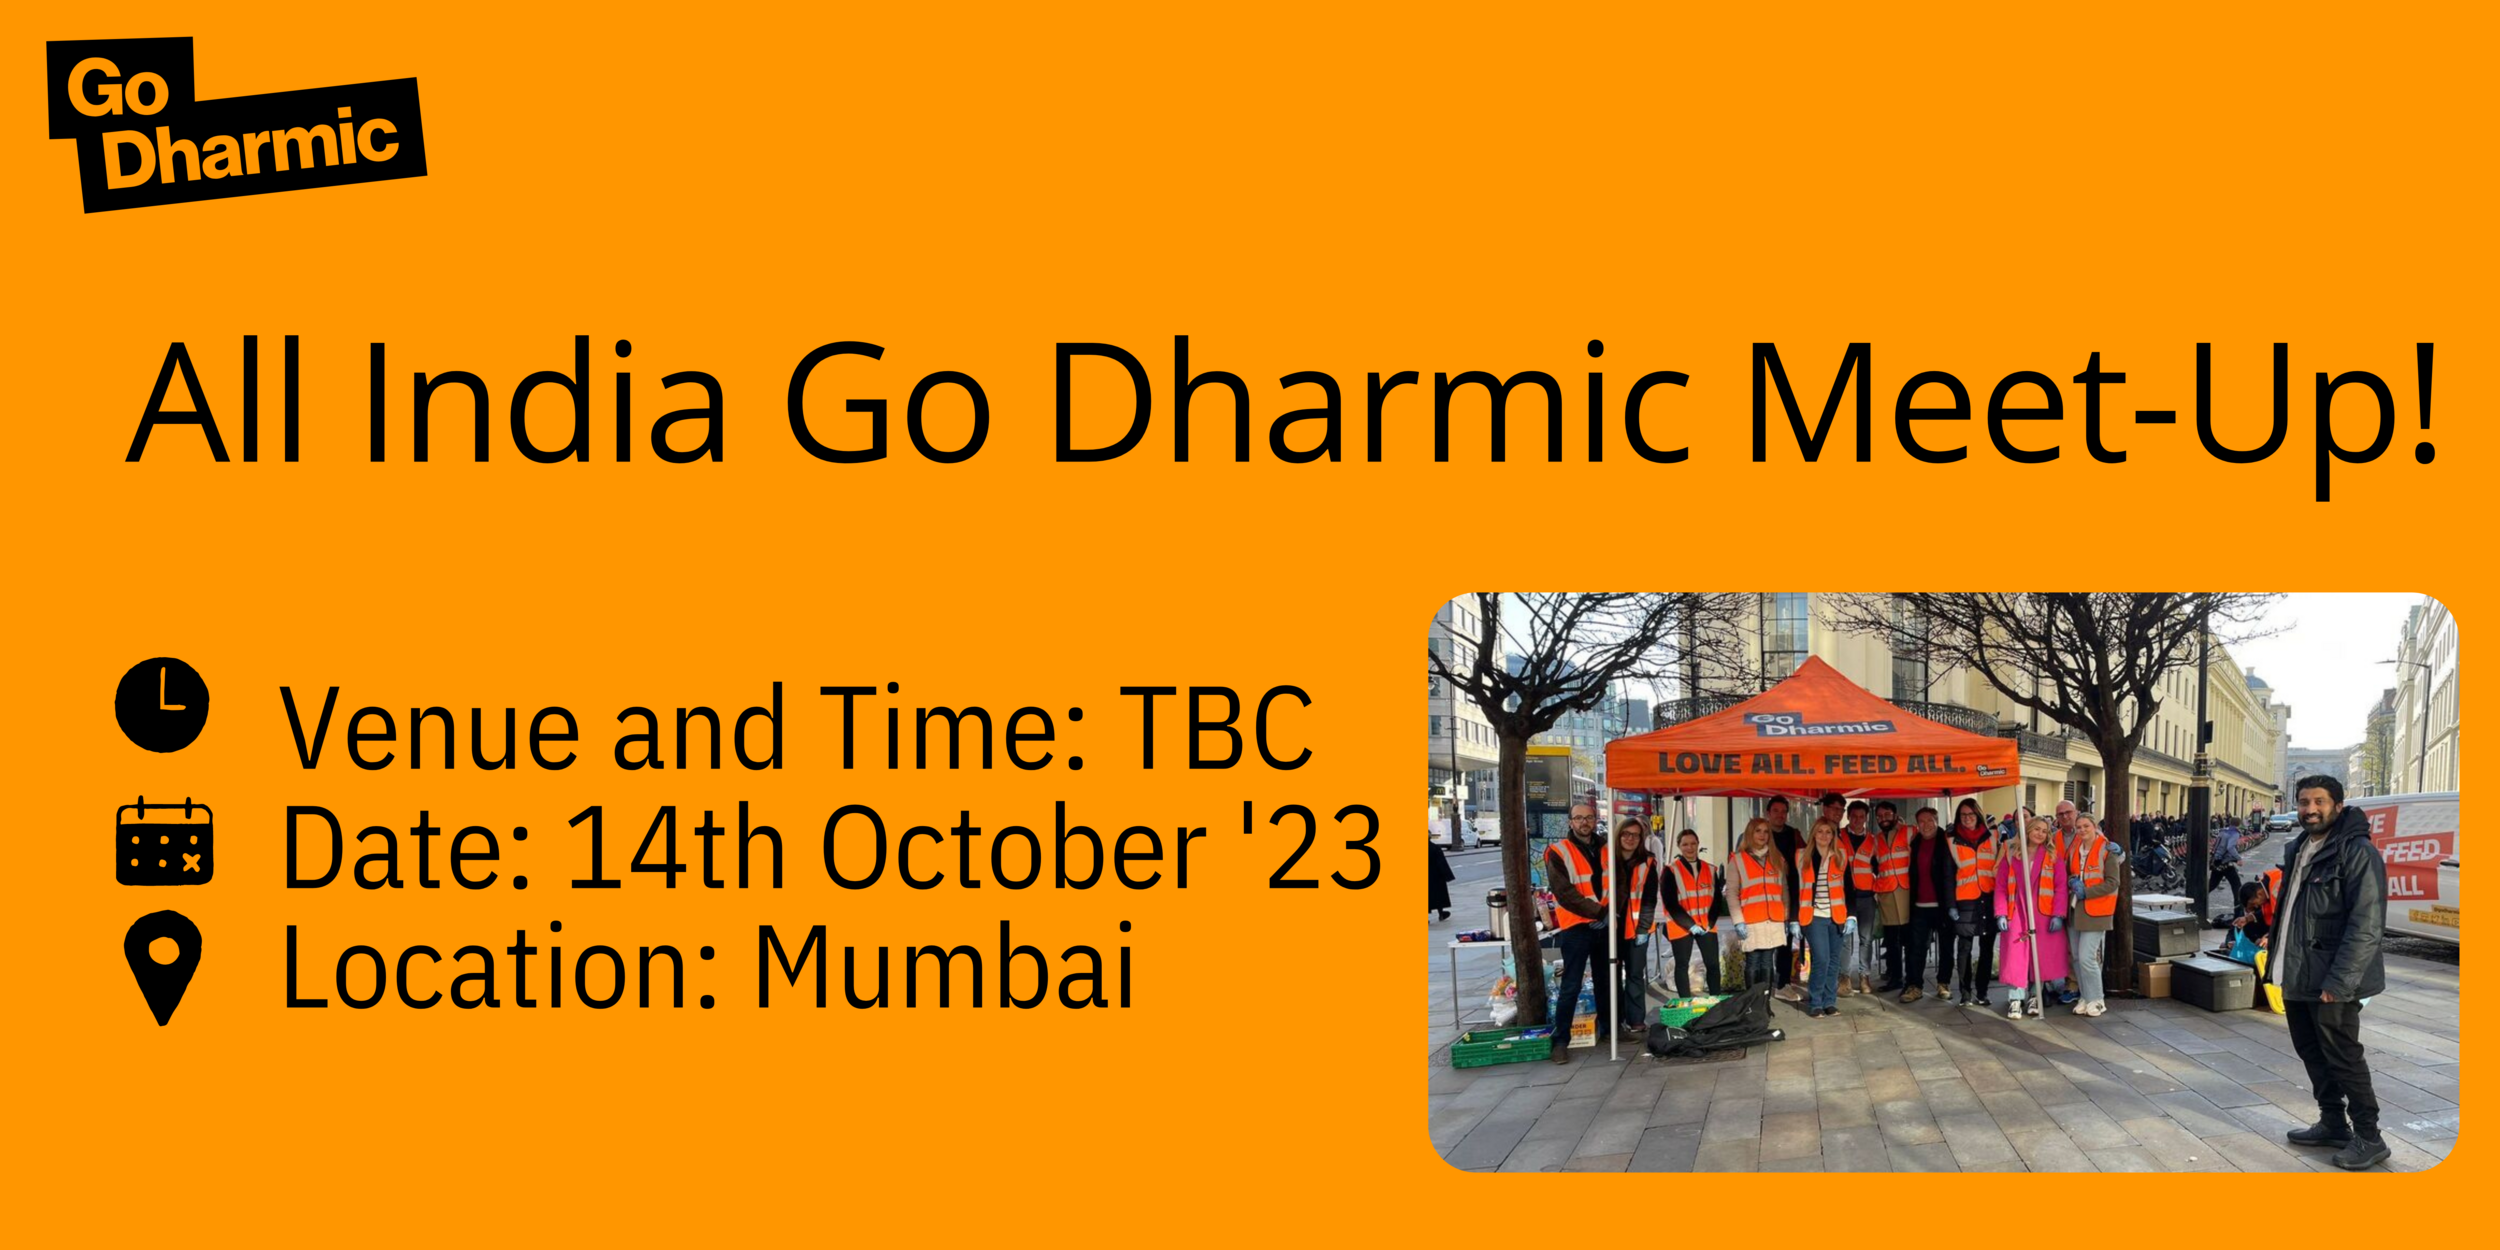 All India Go Dharmic Meet-Up